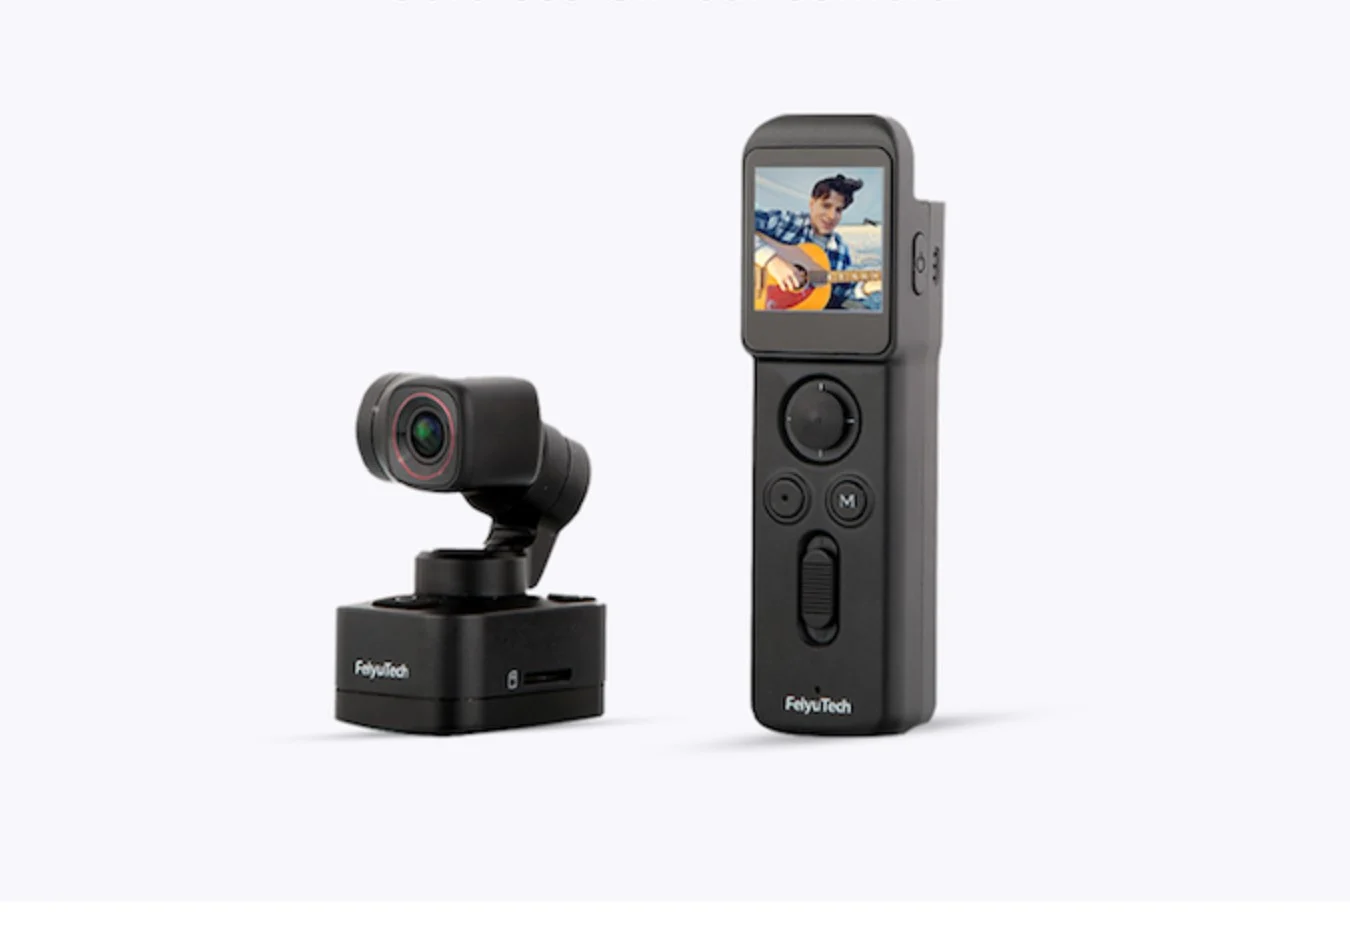 Pocket 3 Feiyu 3-Axis 4K detachable gimbal camera kit